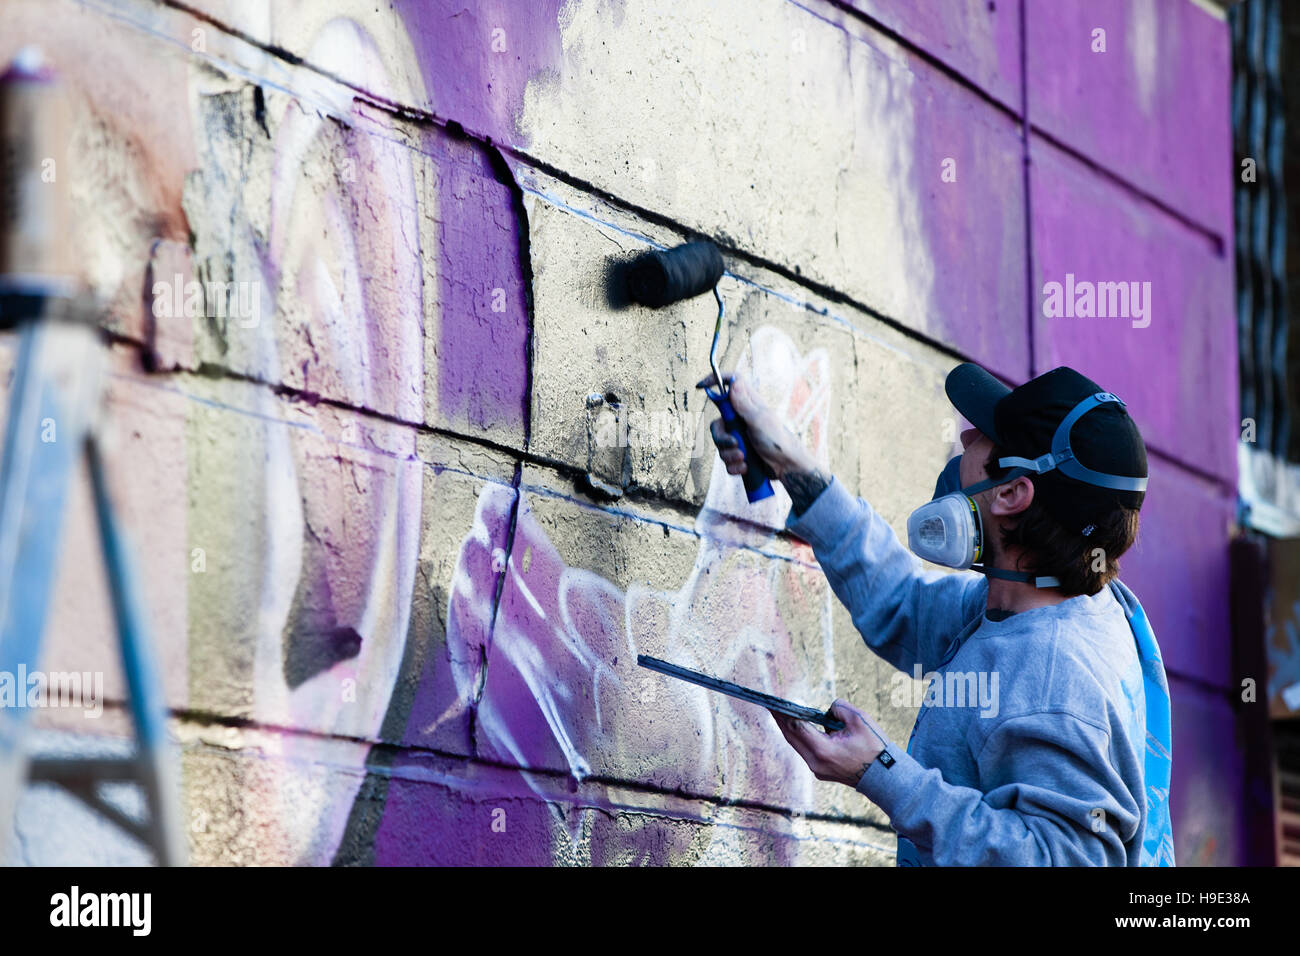 Graffiti gli artisti lavorano in Camden Market con vernici spray e di rulli creazione wall art, Londra Foto Stock